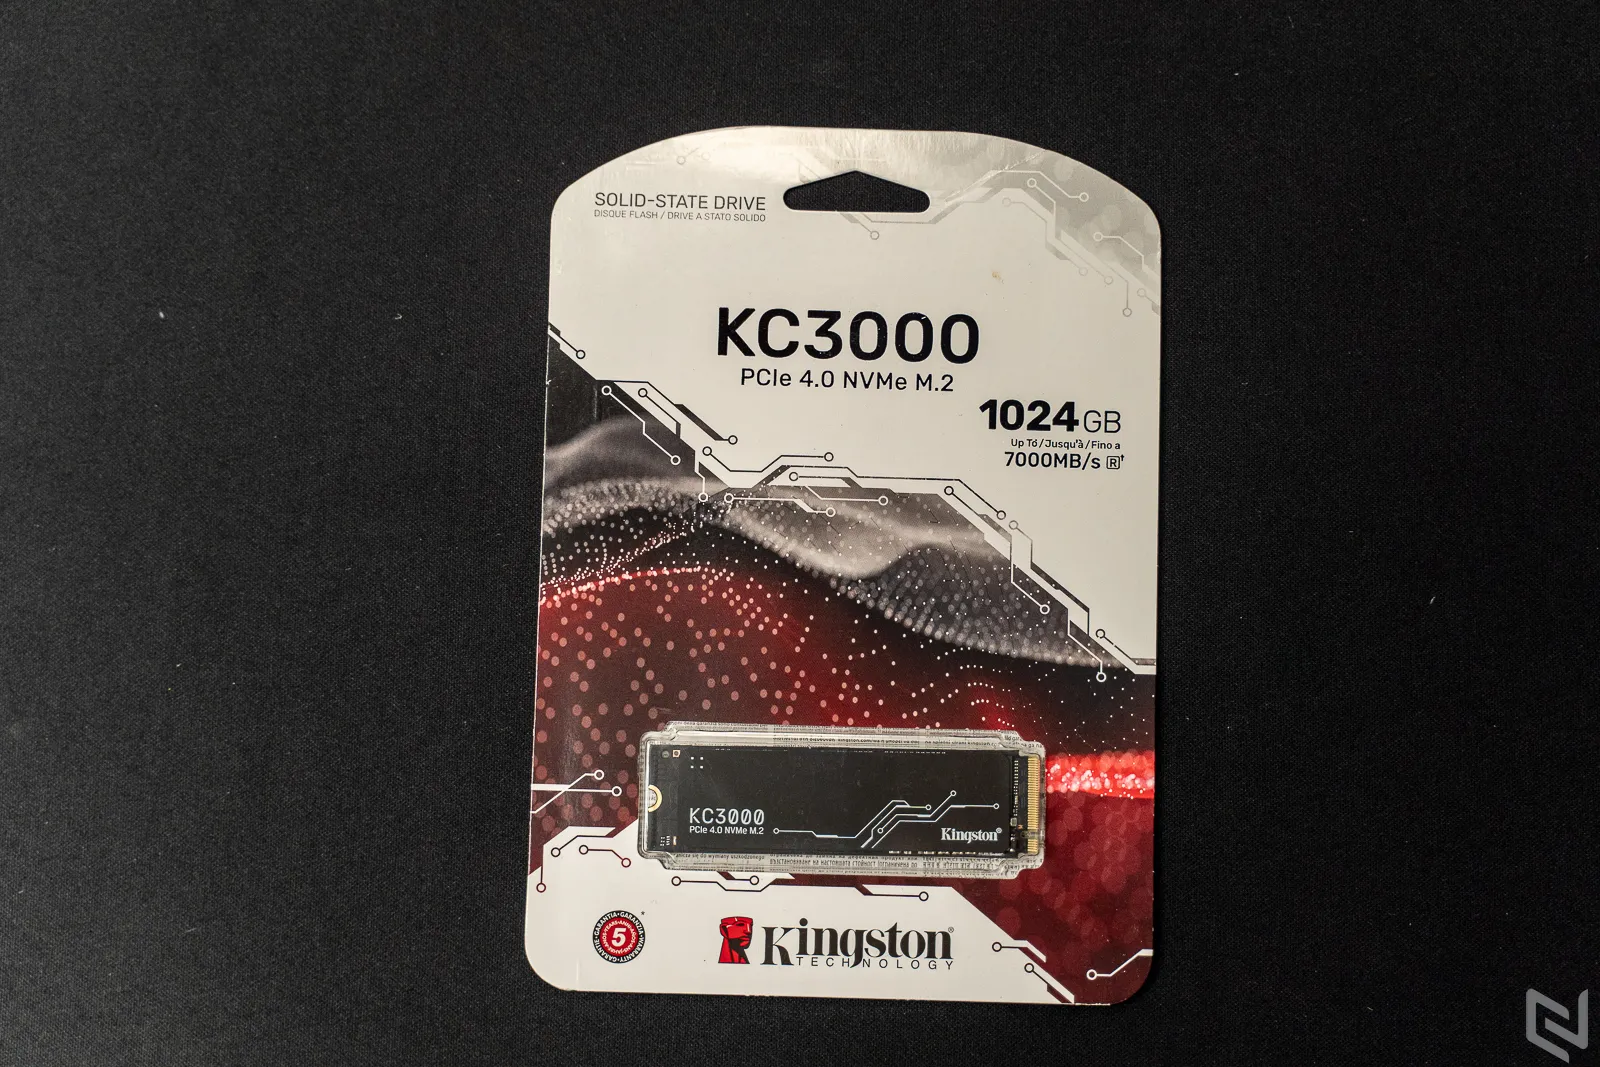 Đánh giá SSD Kingston KC3000 PCIe 4.0 NVMe M.2: Hiệu năng vượt trội, giao thức PCIe 4.0 với nhiều tuỳ chọn bộ nhớ